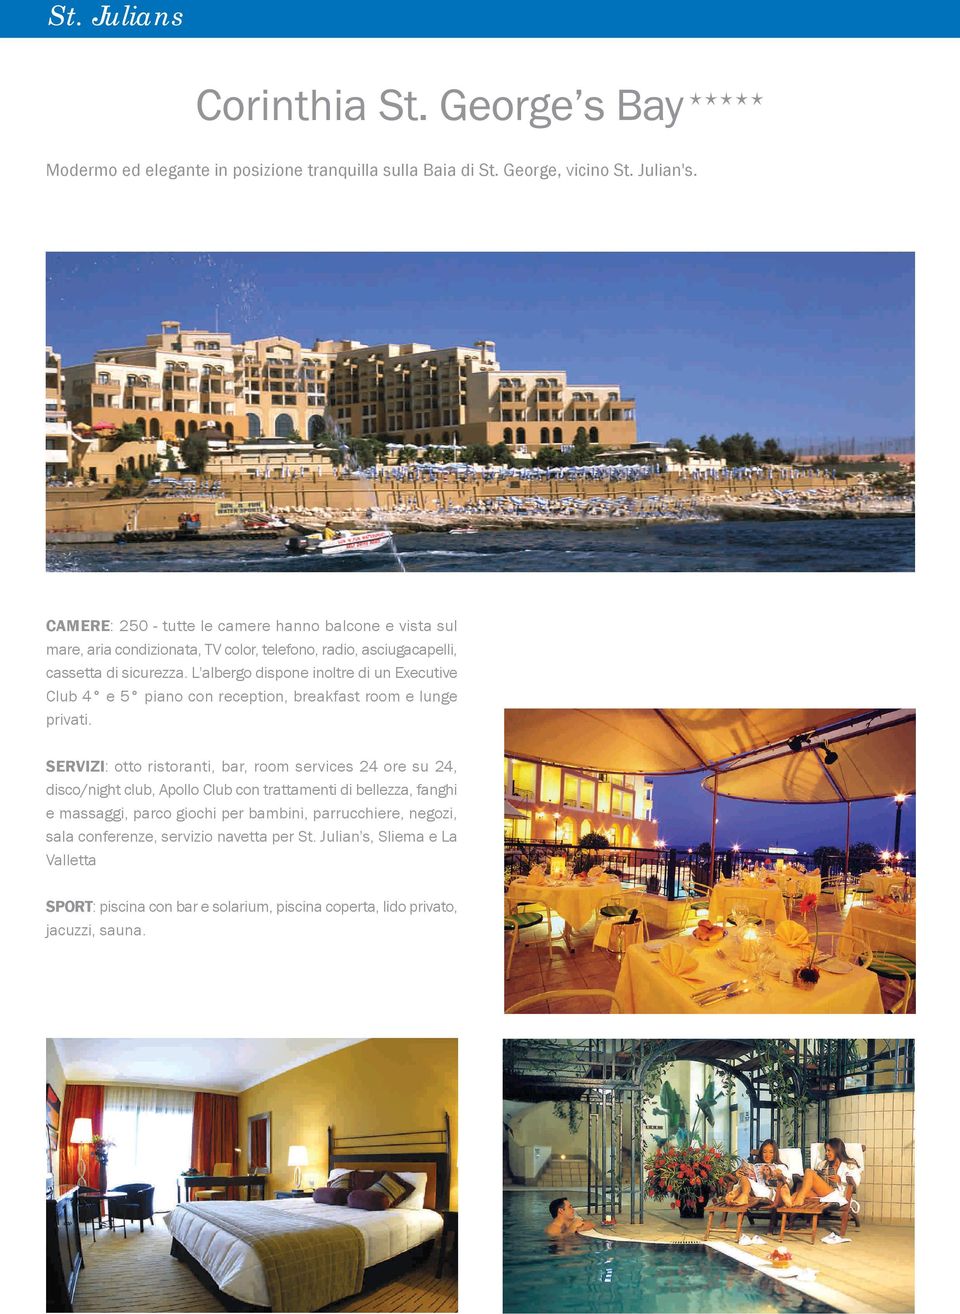 L'albergo dispone inoltre di un Executive Club 4 e 5 piano con reception, breakfast room e lunge privati.